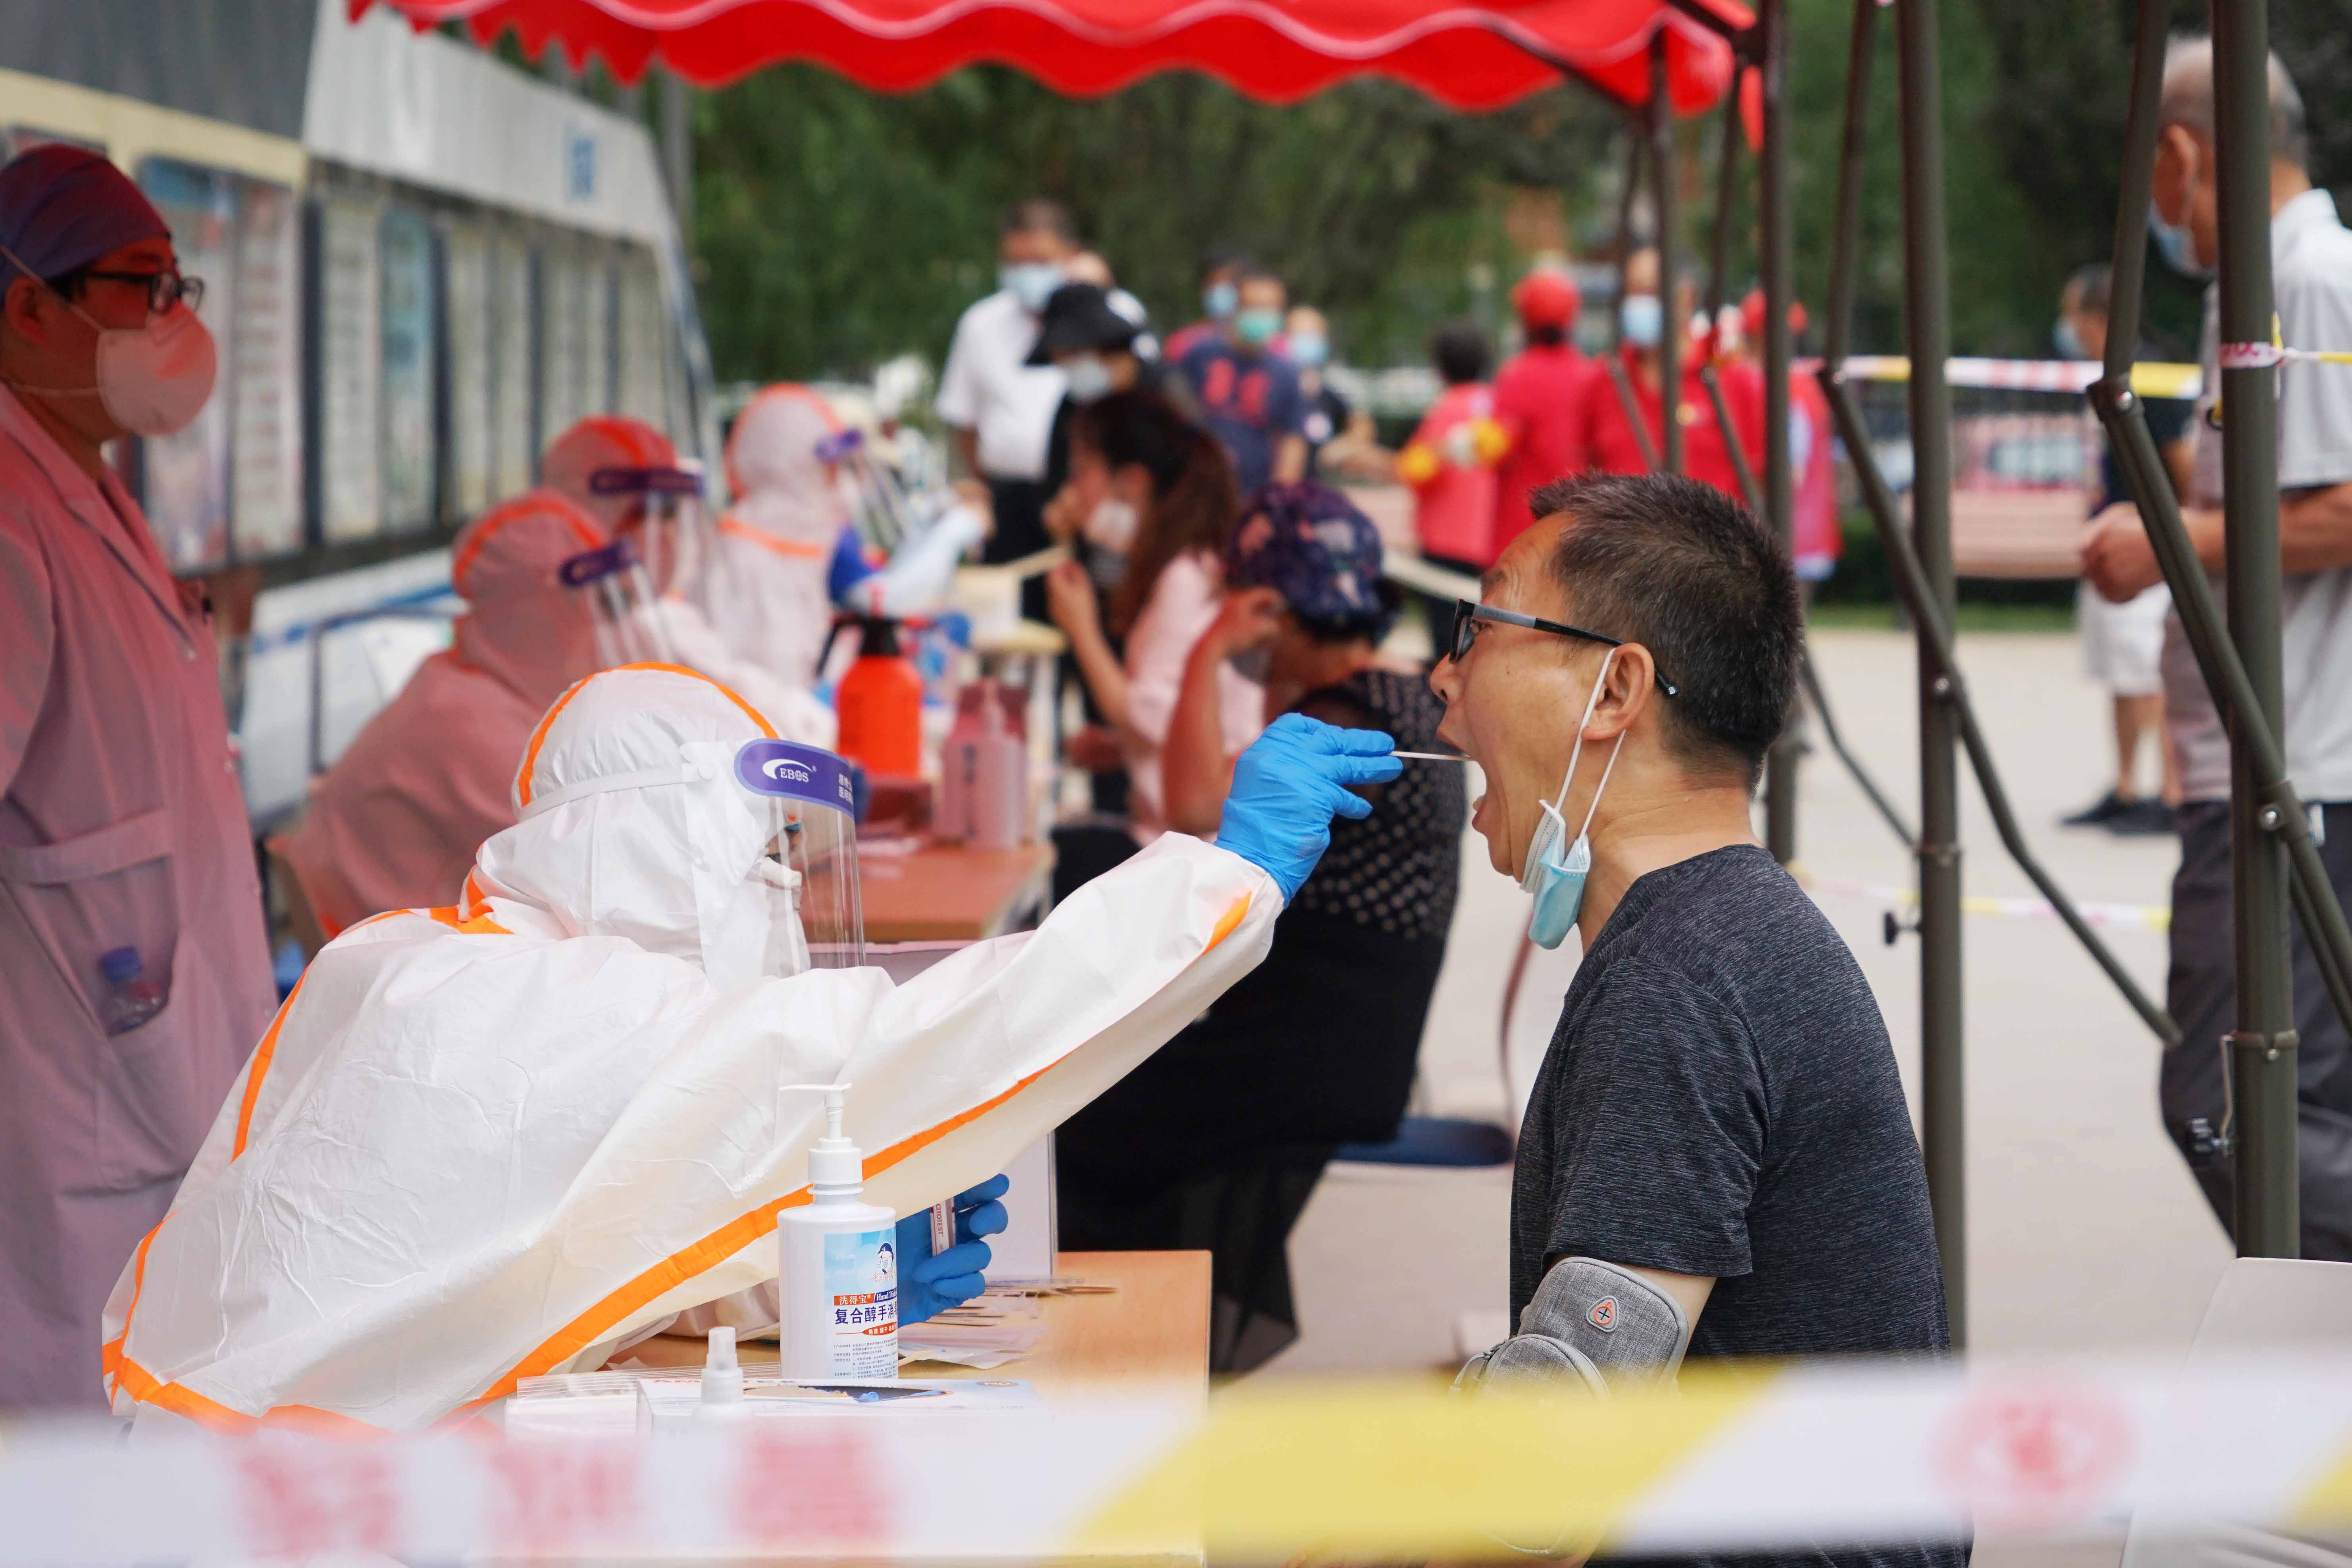 2020年6月17日,北京广外医院的医务工作者为京铁和园社区的居民做核酸